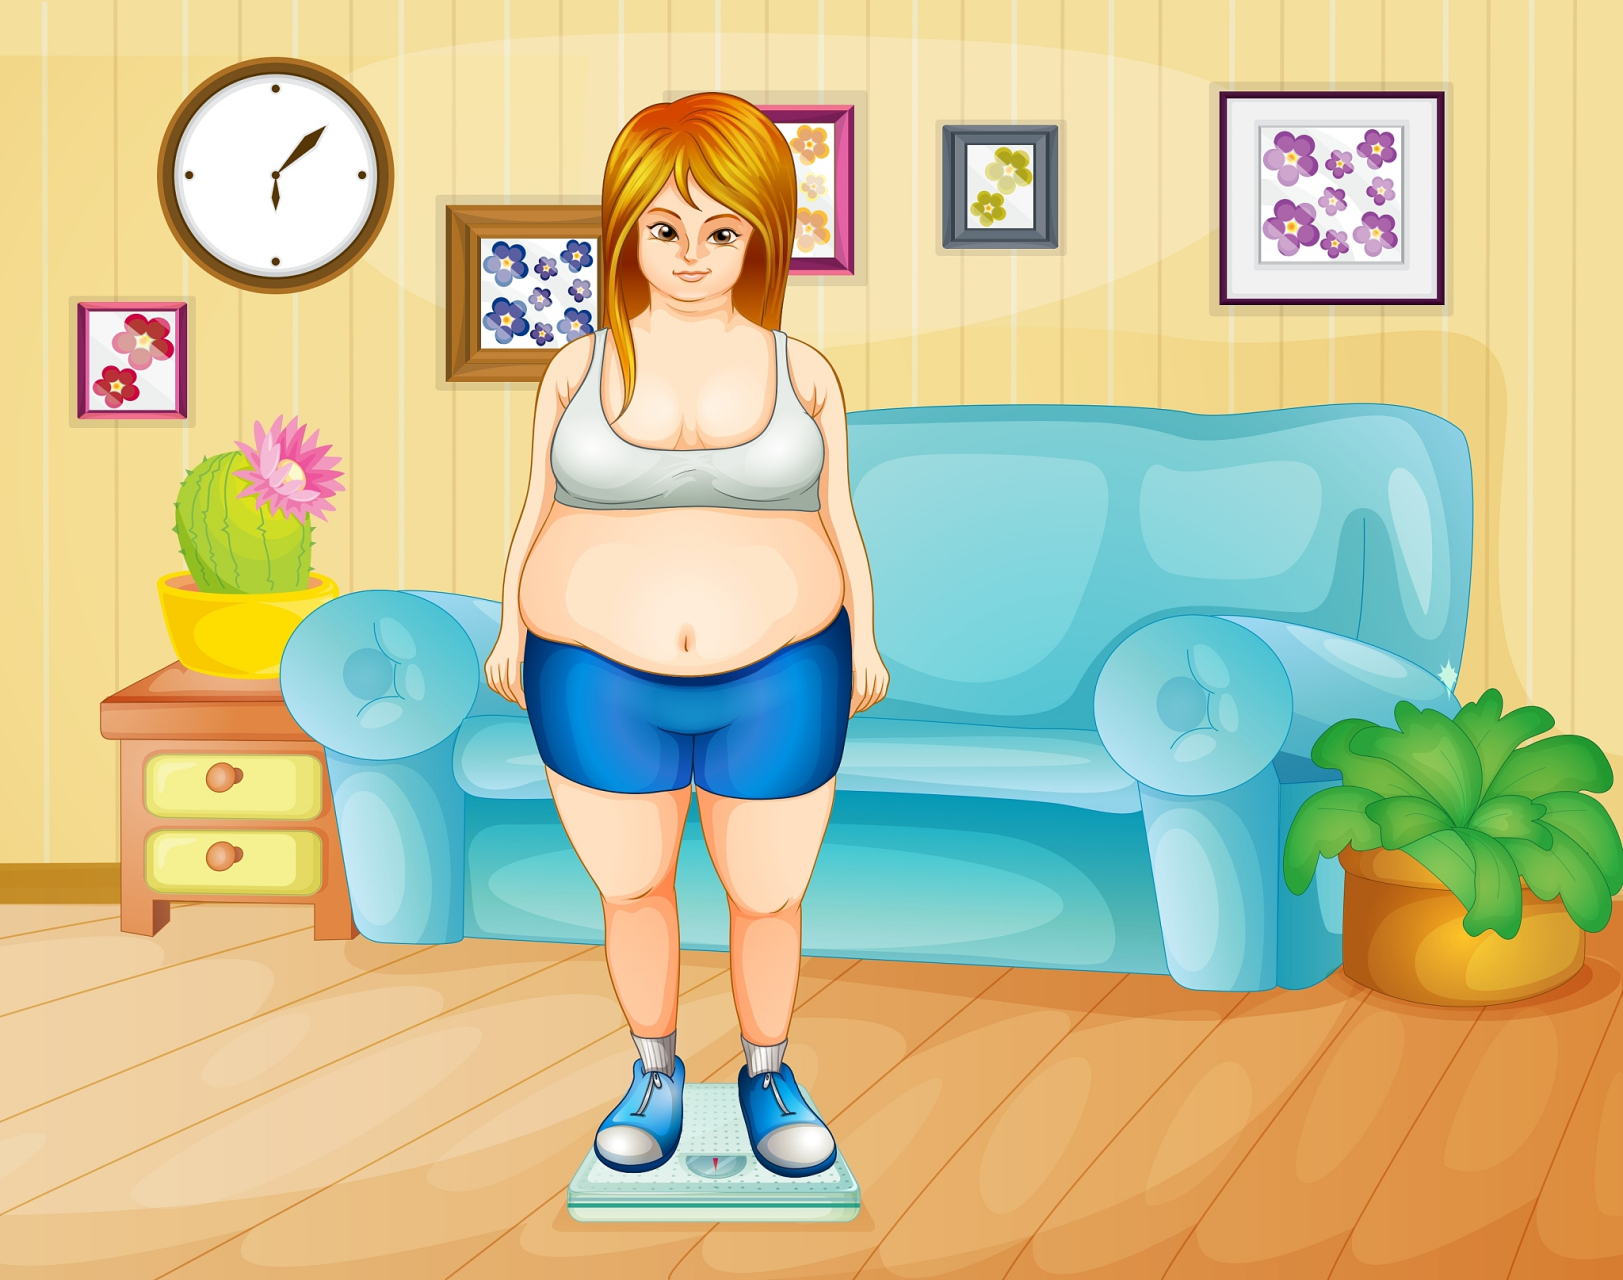 微胖女孩受欢迎因身材匀称,曲线优美,自信,乐观,开朗,健康状况良好,善